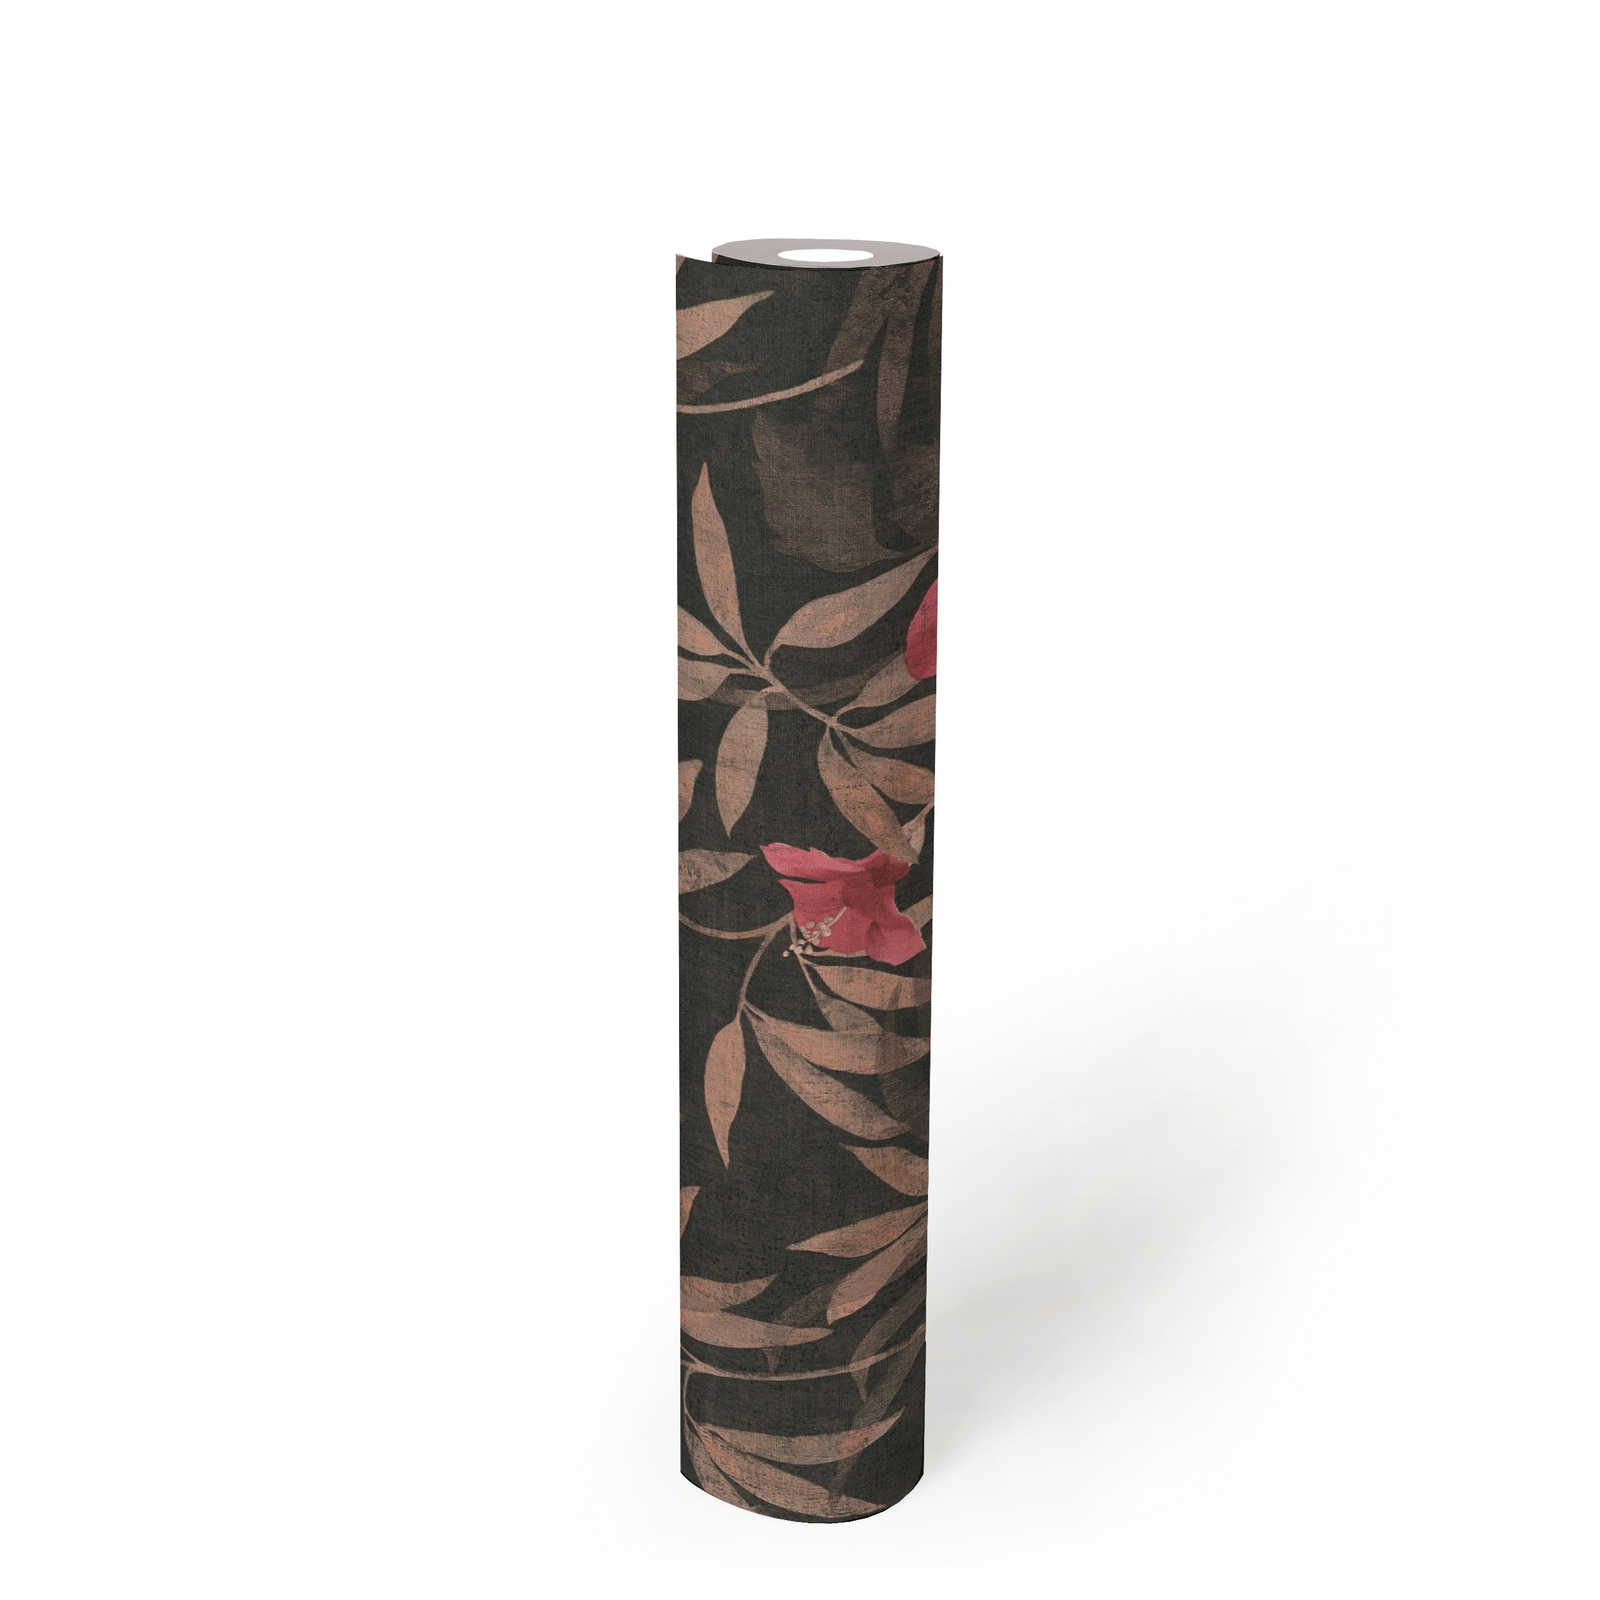             behang jungle bladeren & hibiscus bloemen - bruin, rood
        